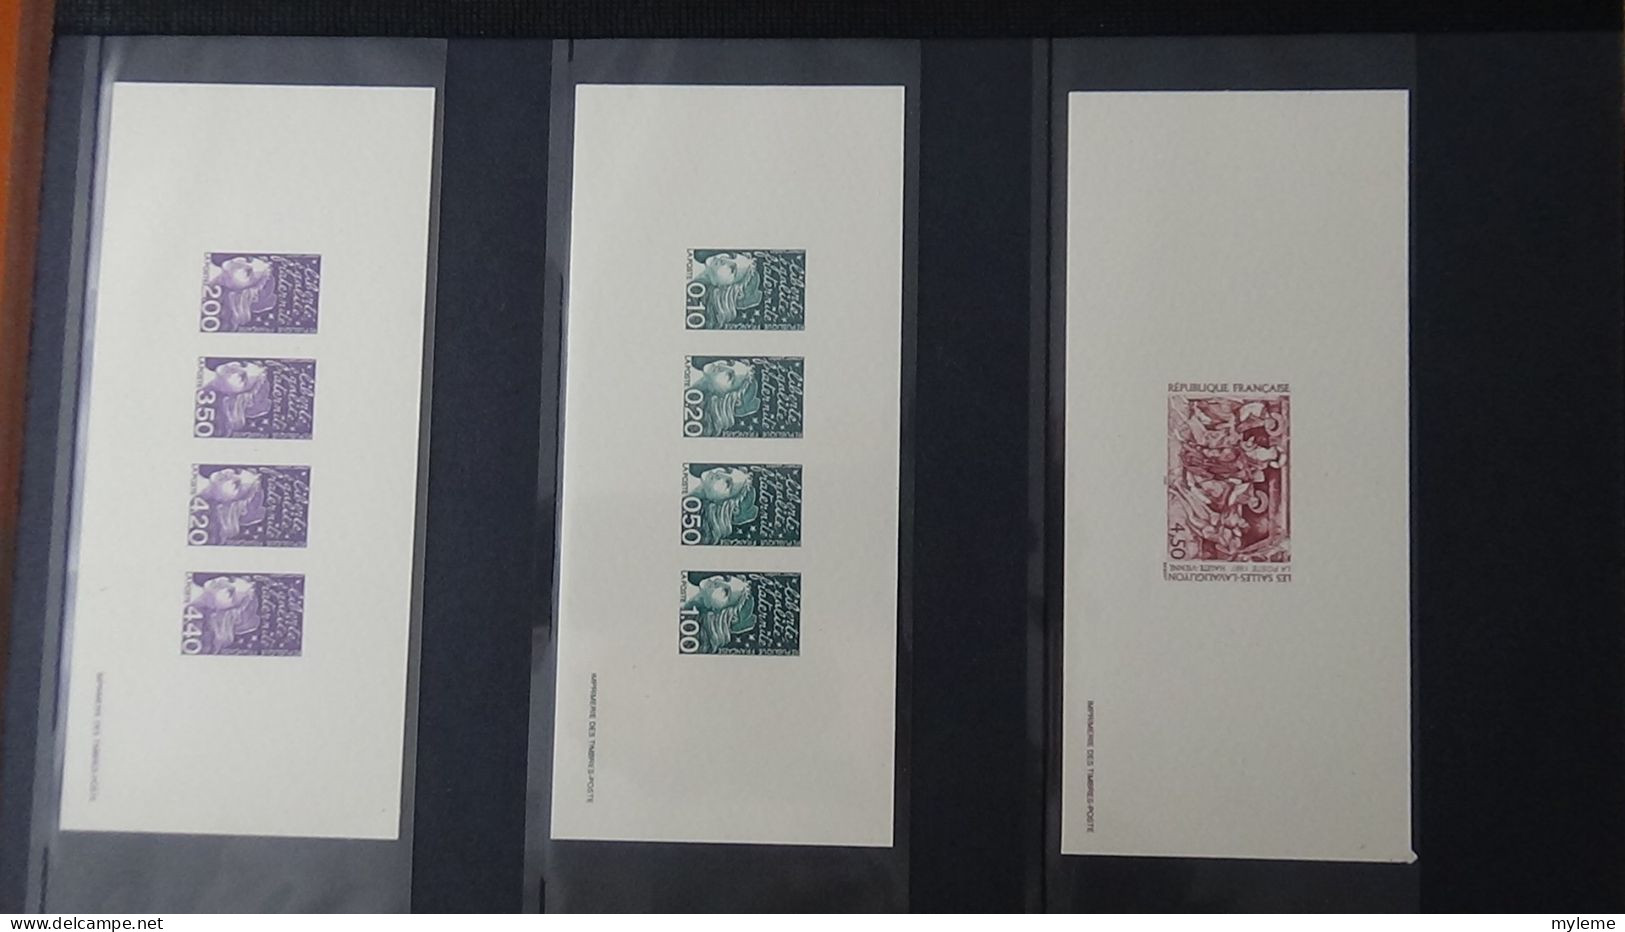 BF77 Gravures des timbres-poste de France sans son album d'origine   A saisir !!!